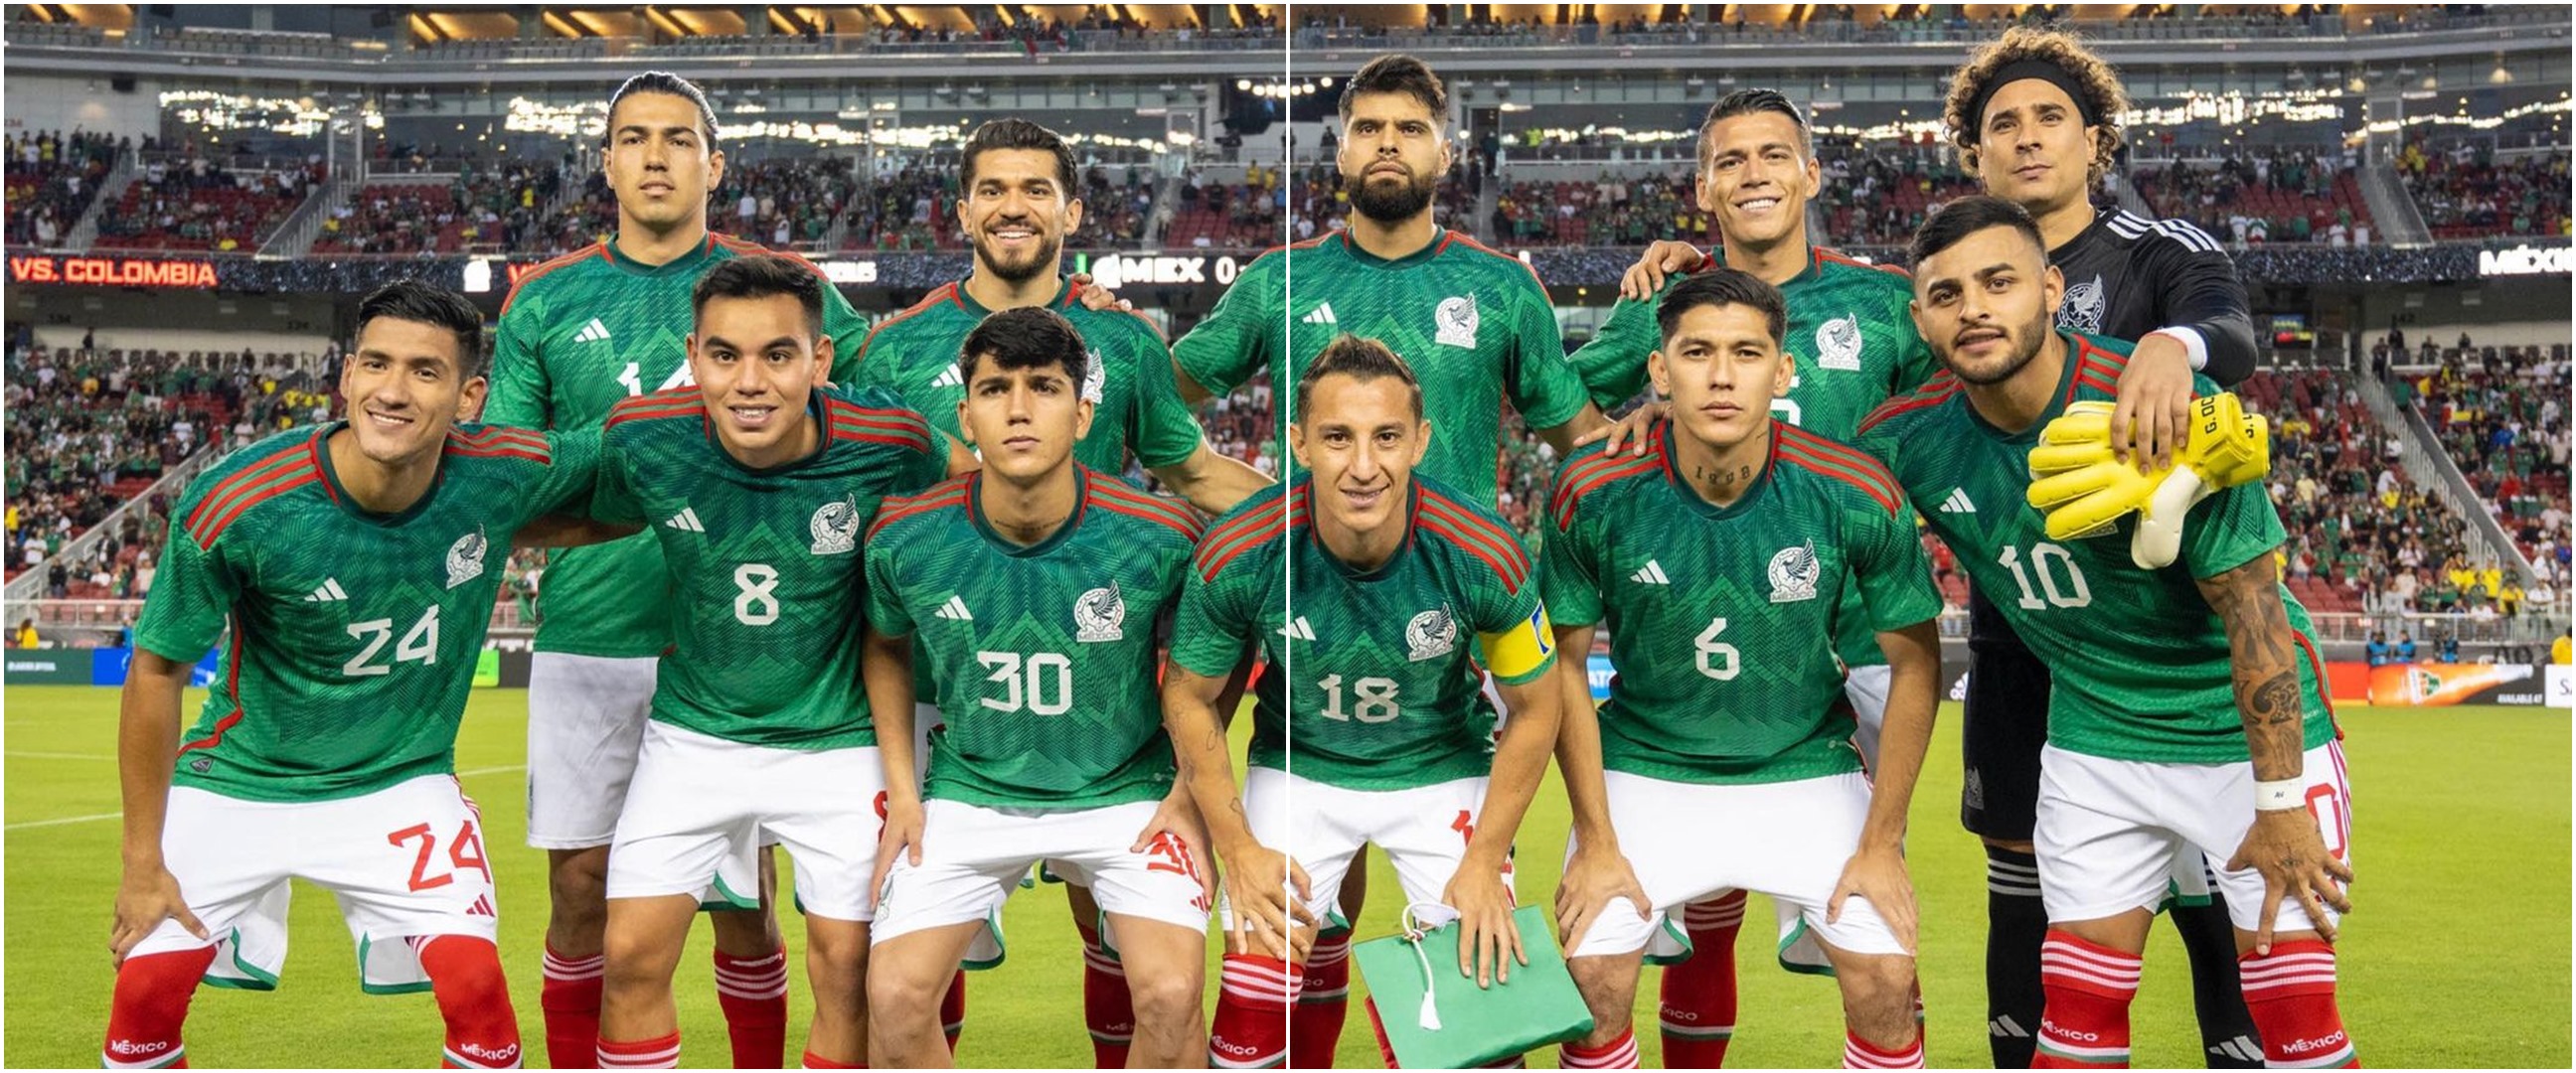 Jadwal Meksiko di Piala Dunia 2022: tanggal, jam, dan siaran TV